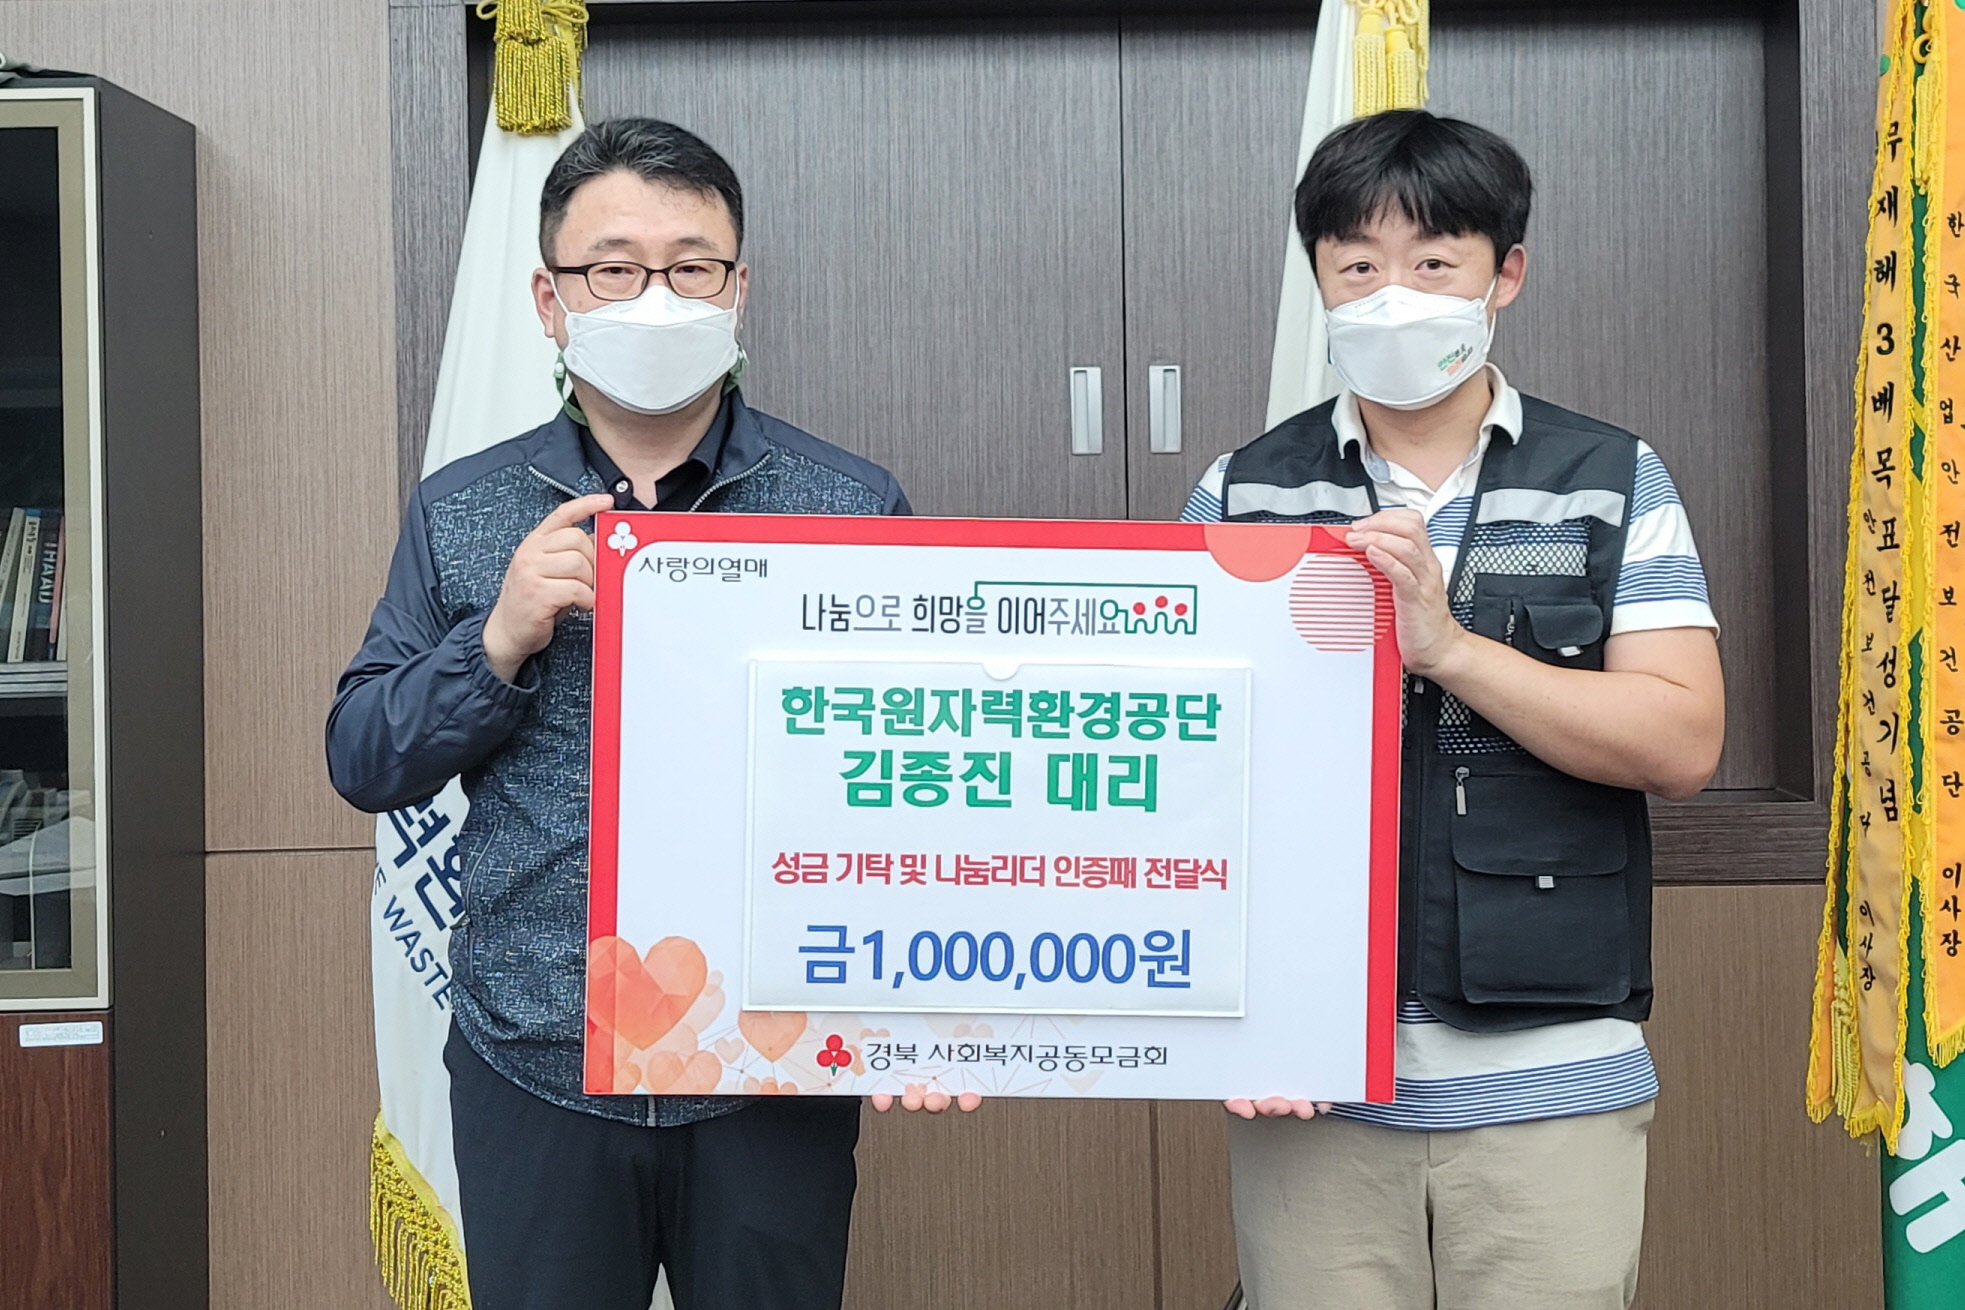 한국원자력환경공단 김종진 대리가 상금을 기탁하는 모습과 나눔리더 인증패를 수여받는 모습